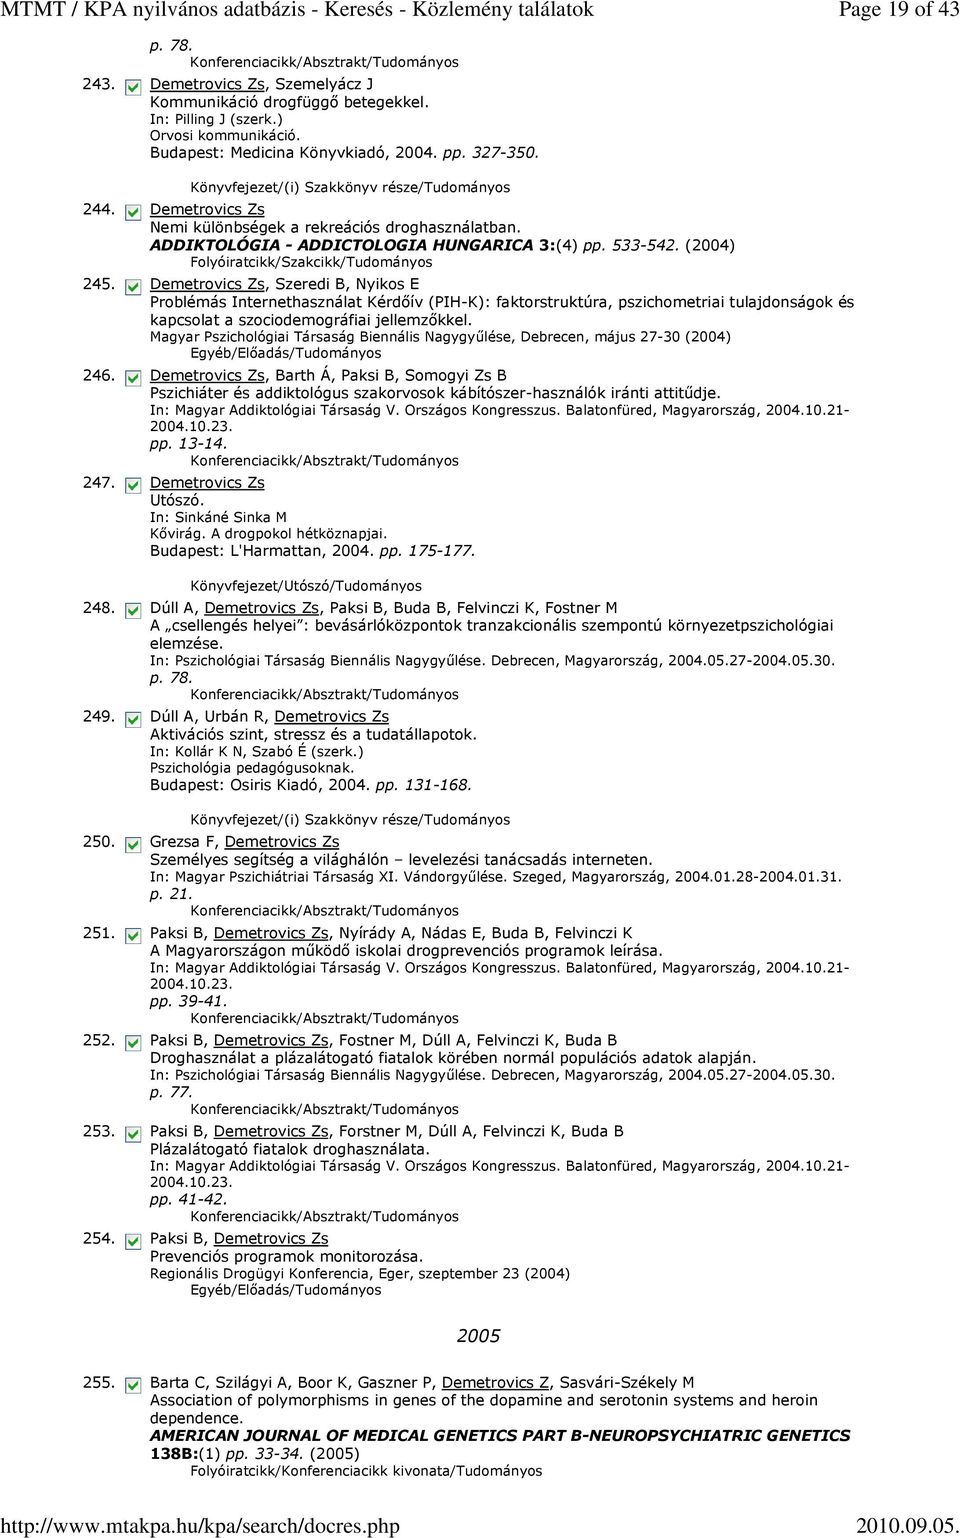 (2004), Szeredi B, Nyikos E Problémás Internethasználat Kérdőív (PIH-K): faktorstruktúra, pszichometriai tulajdonságok és kapcsolat a szociodemográfiai jellemzőkkel.